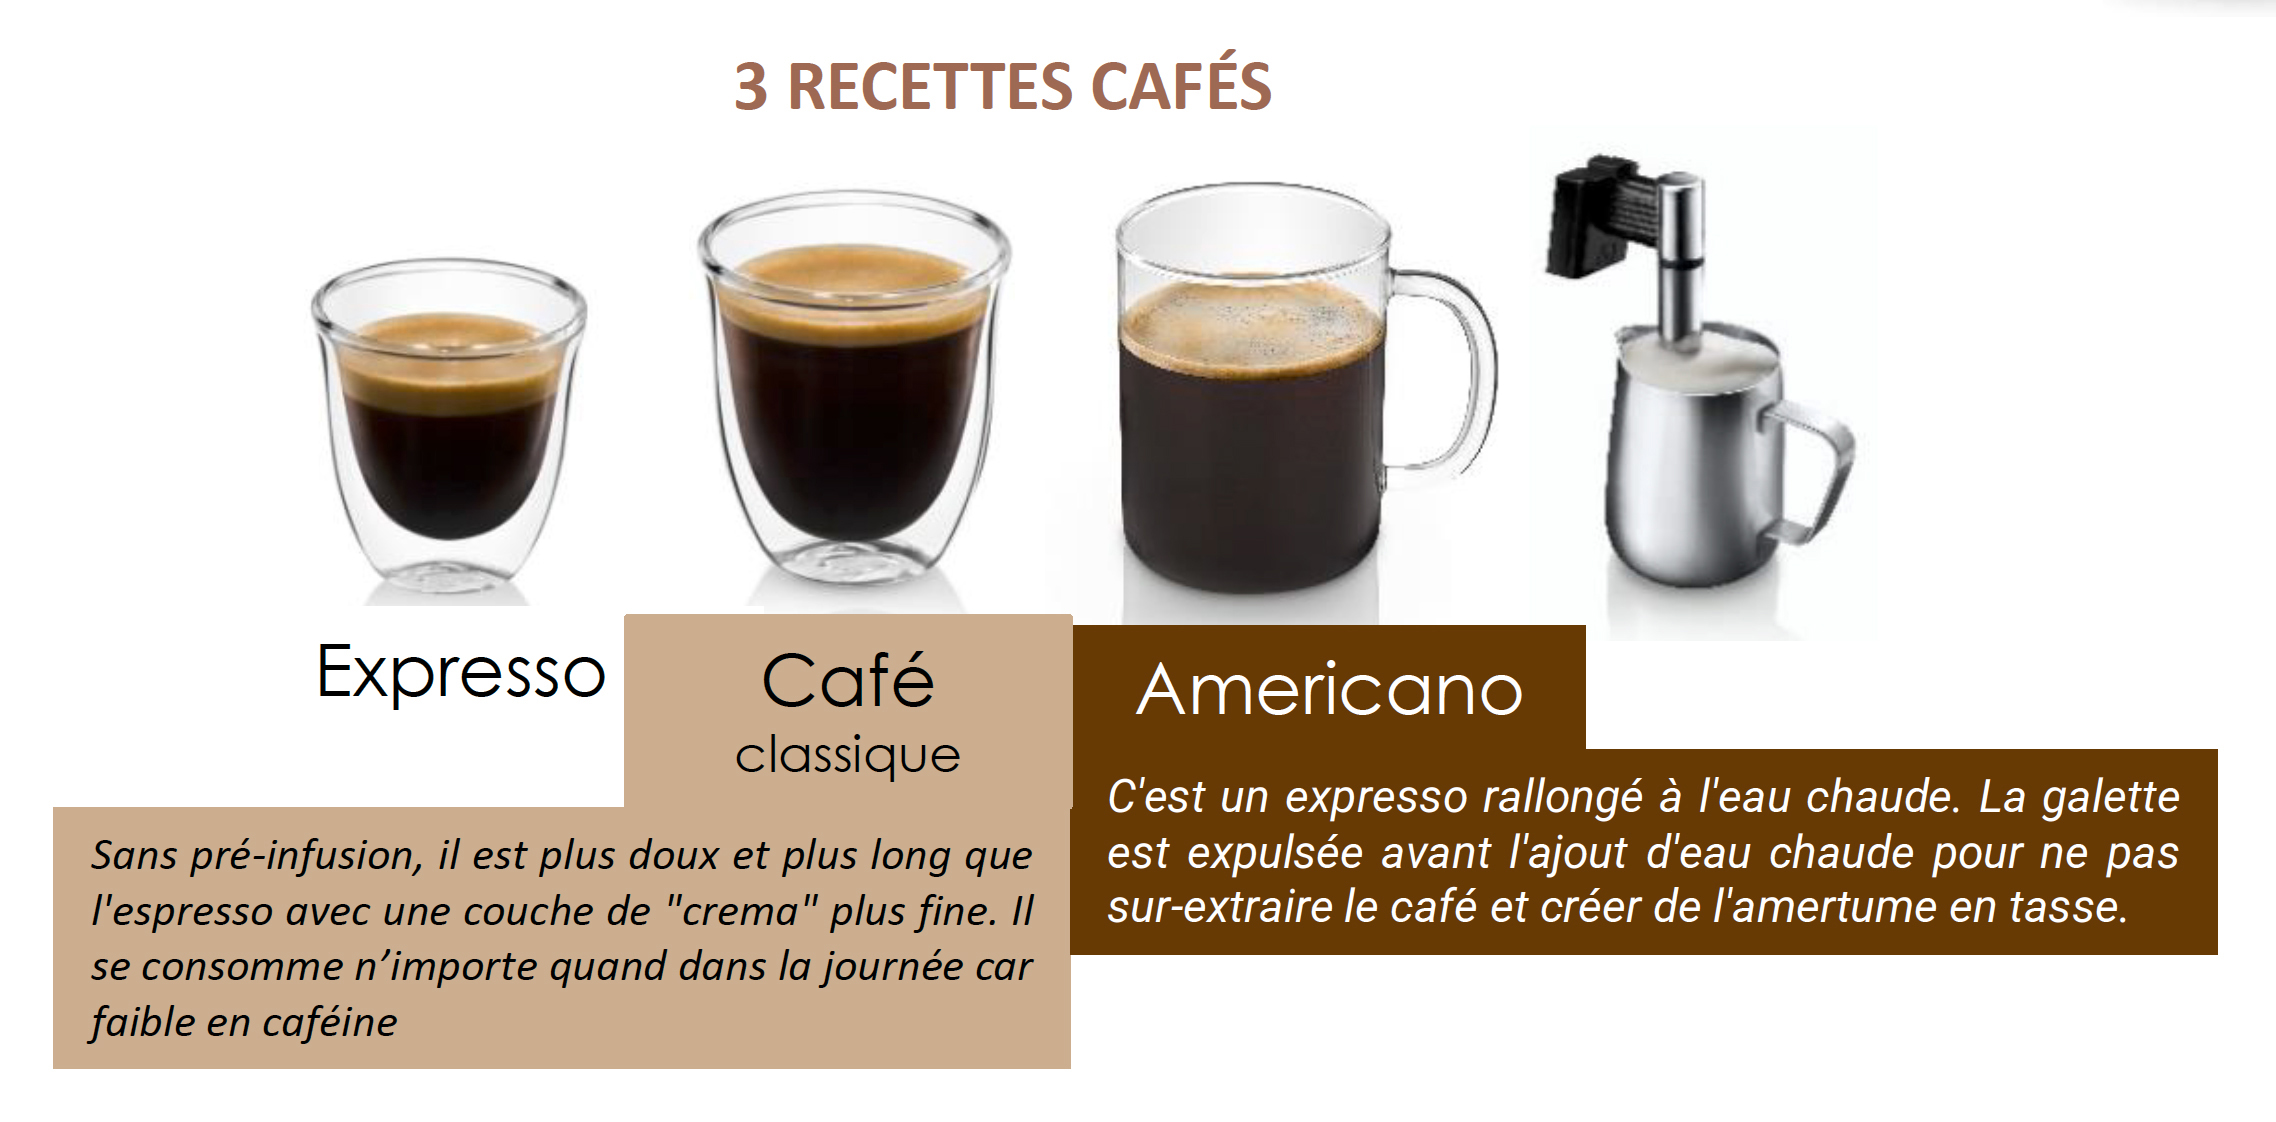 3 recettes de cafés avec la magnifica start de Delonghi : Expresso, classique et americano